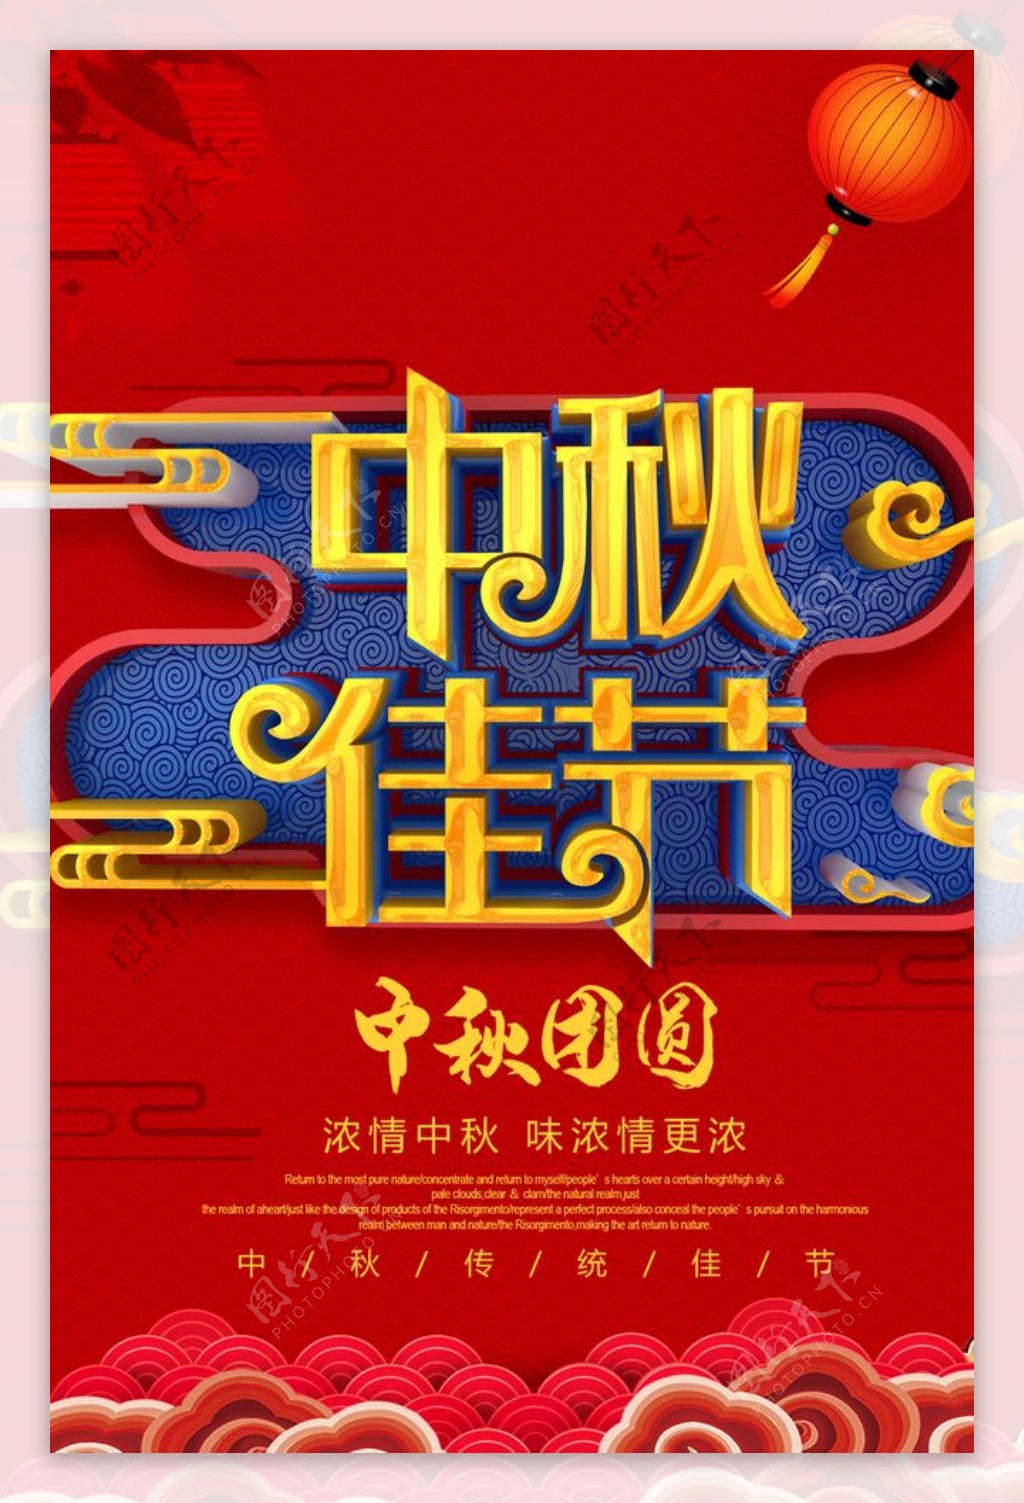 中秋佳节节日活动促销海报素材